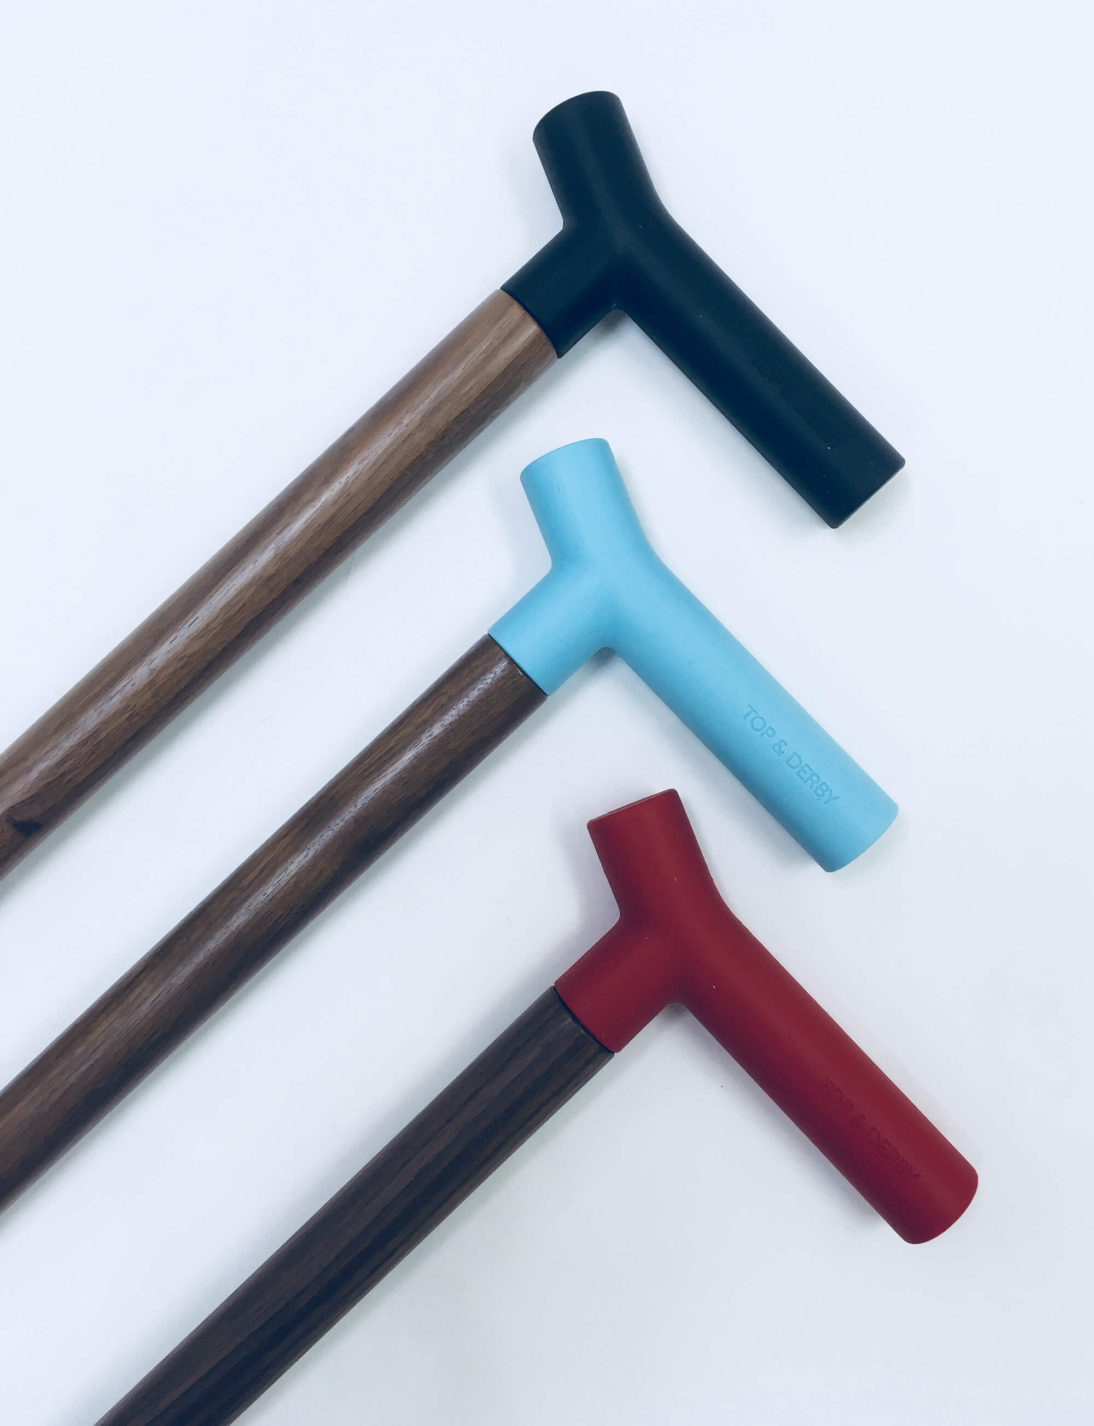 Trois cannes de marche en bois de différentes tailles à poignée en silicone noire, rouge ou bleu pâle.